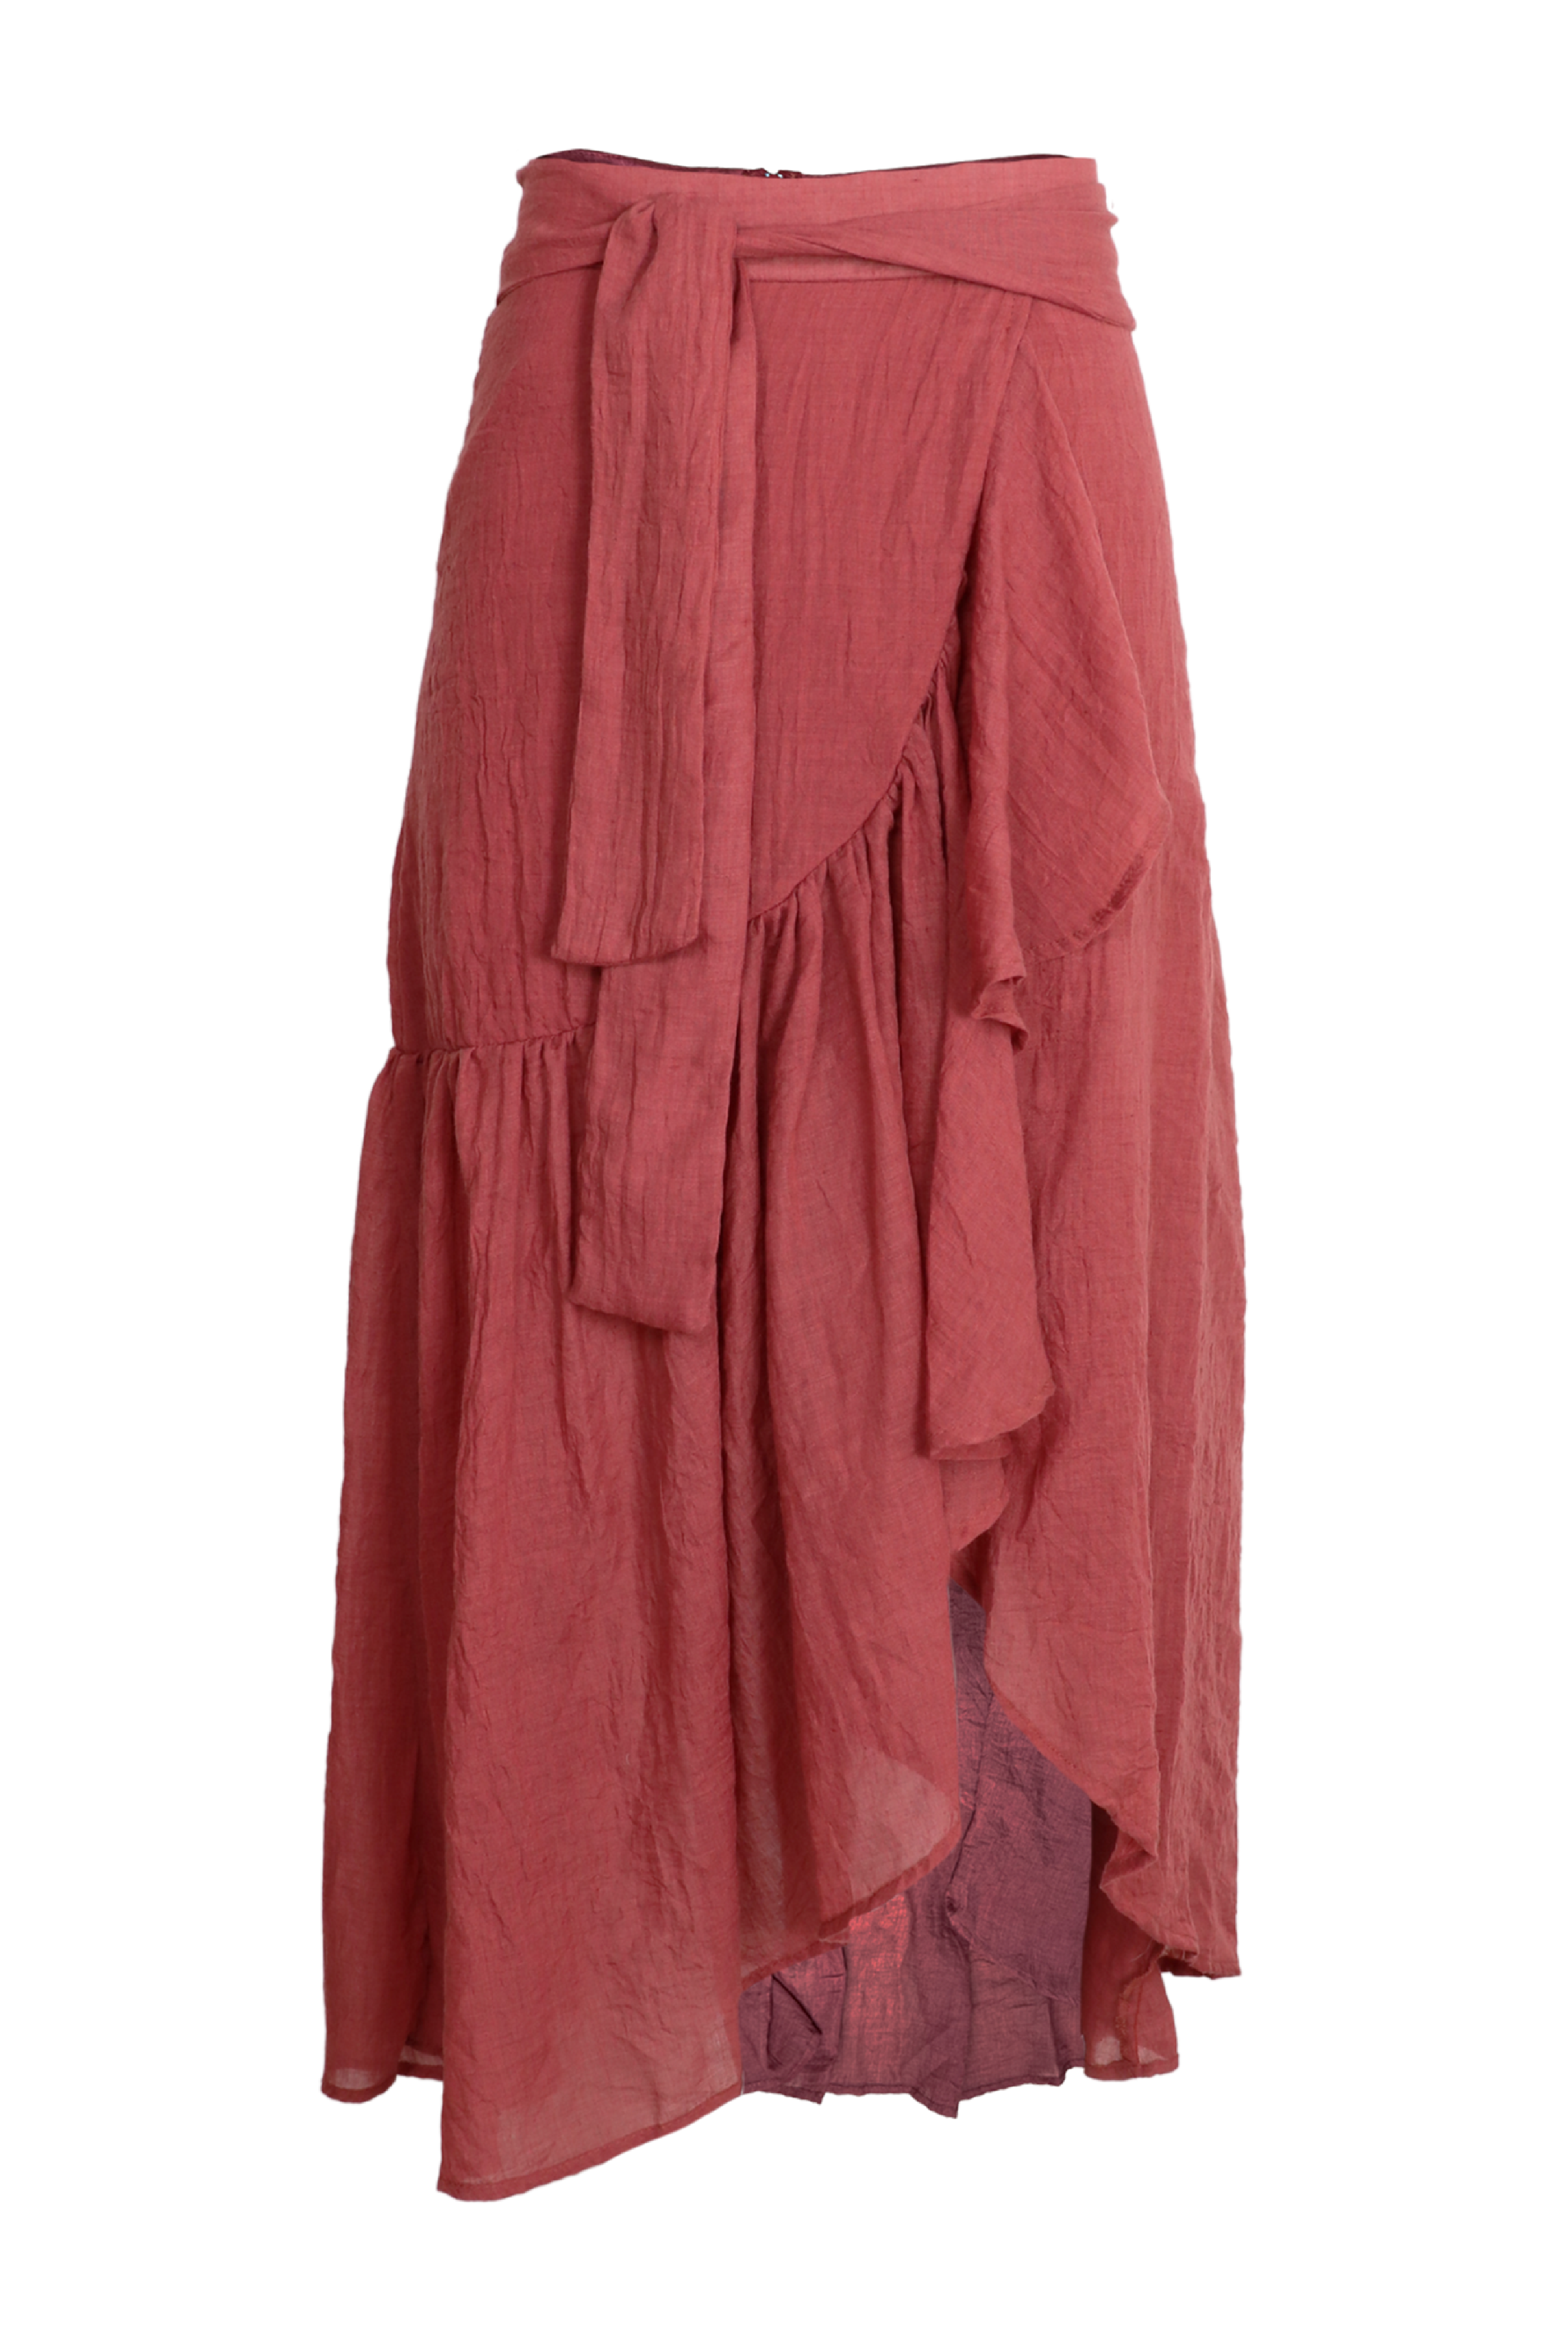 Hermosa falda midi con lazos para ajustar en cintura color cobre